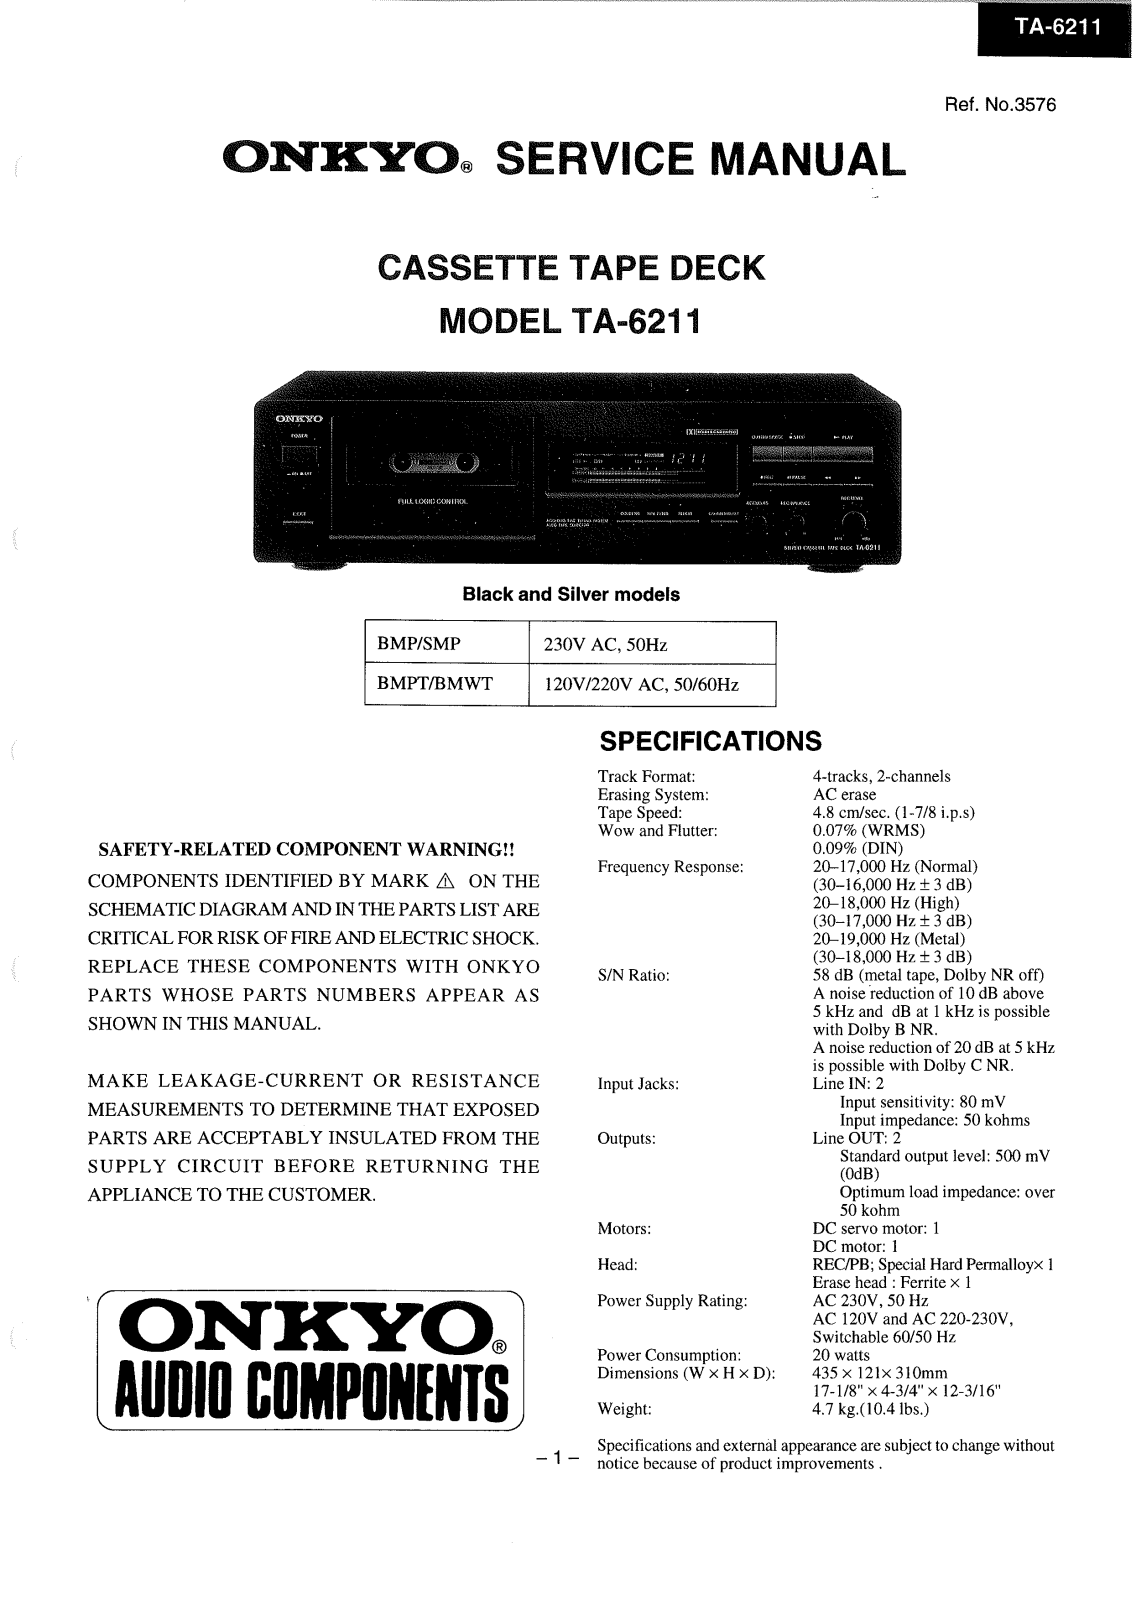 Onkyo ta-6211 Service Manual